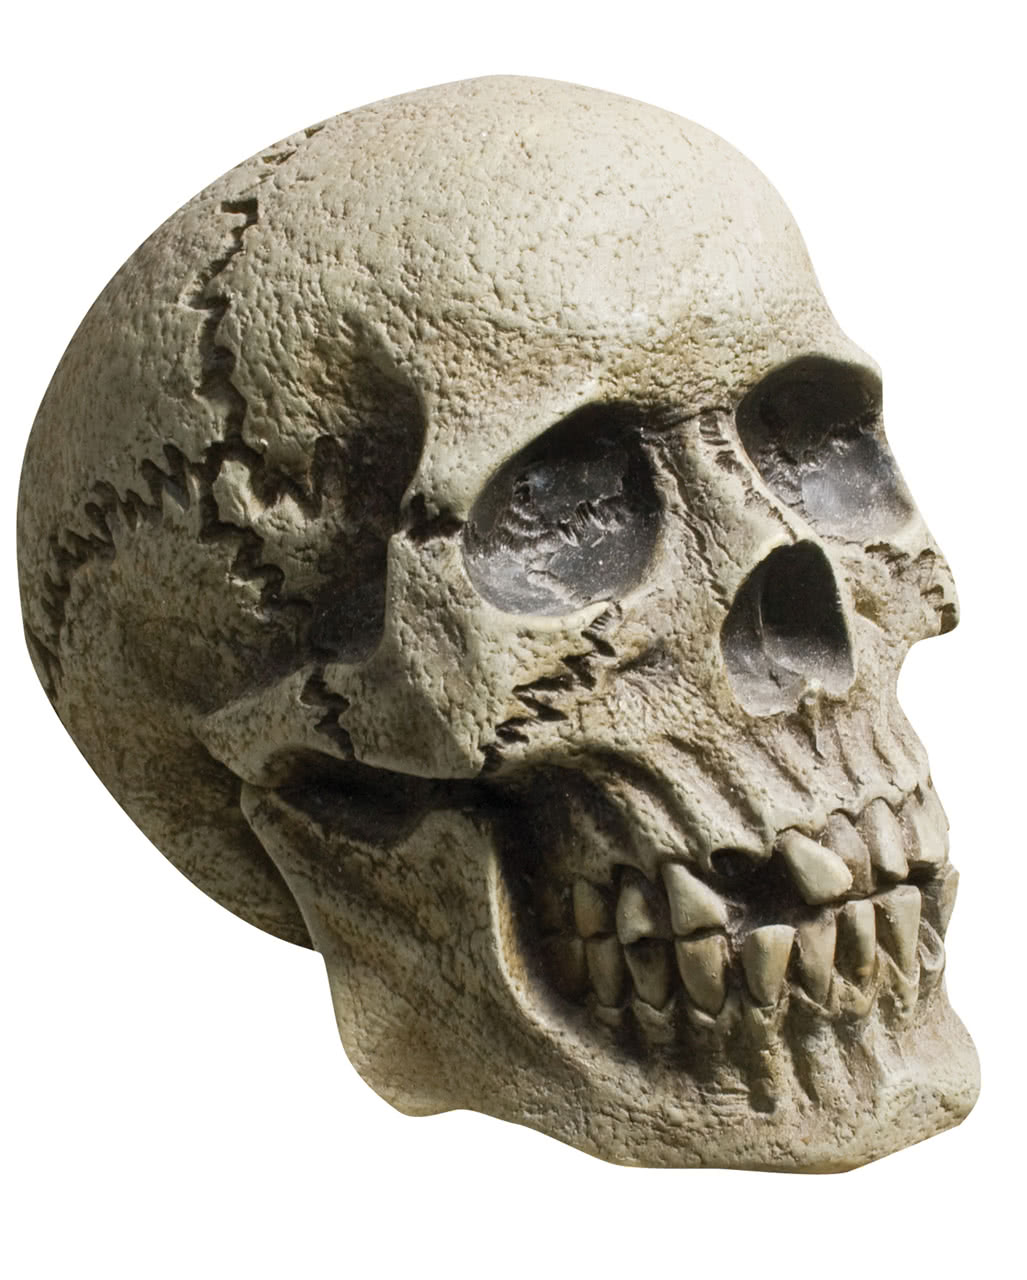 Totenschädel Stacheldraht Skull Halloween Gothic Totenkopf Dekoration